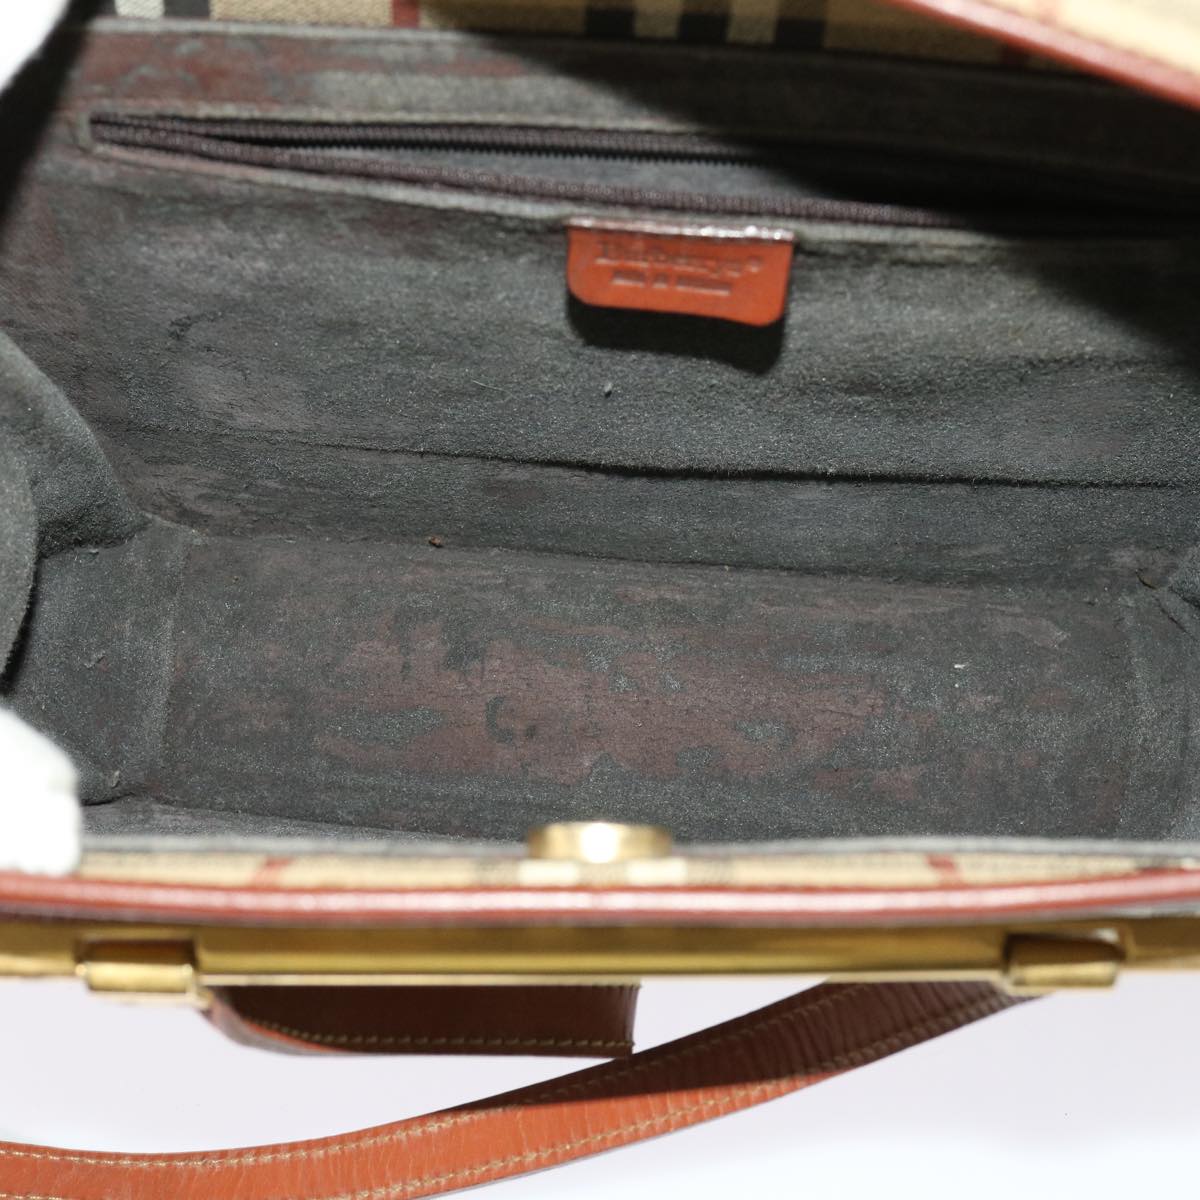 Burberrys Nova Check Shoulder Bag PVC Leather Beige Auth 63316